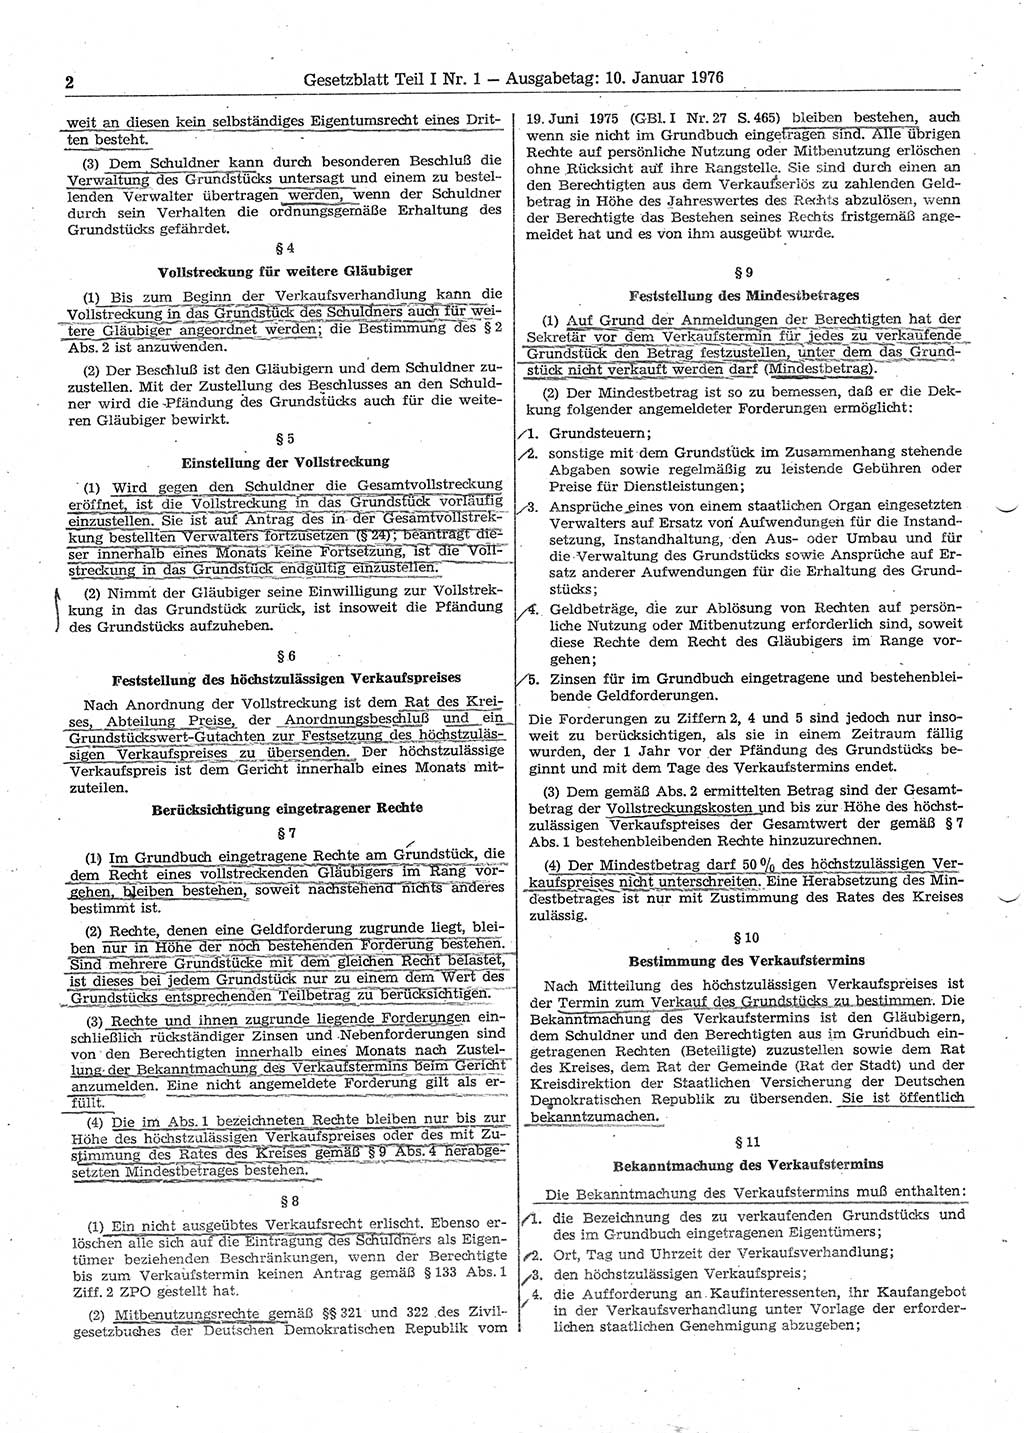 Gesetzblatt (GBl.) der Deutschen Demokratischen Republik (DDR) Teil Ⅰ 1976, Seite 2 (GBl. DDR Ⅰ 1976, S. 2)